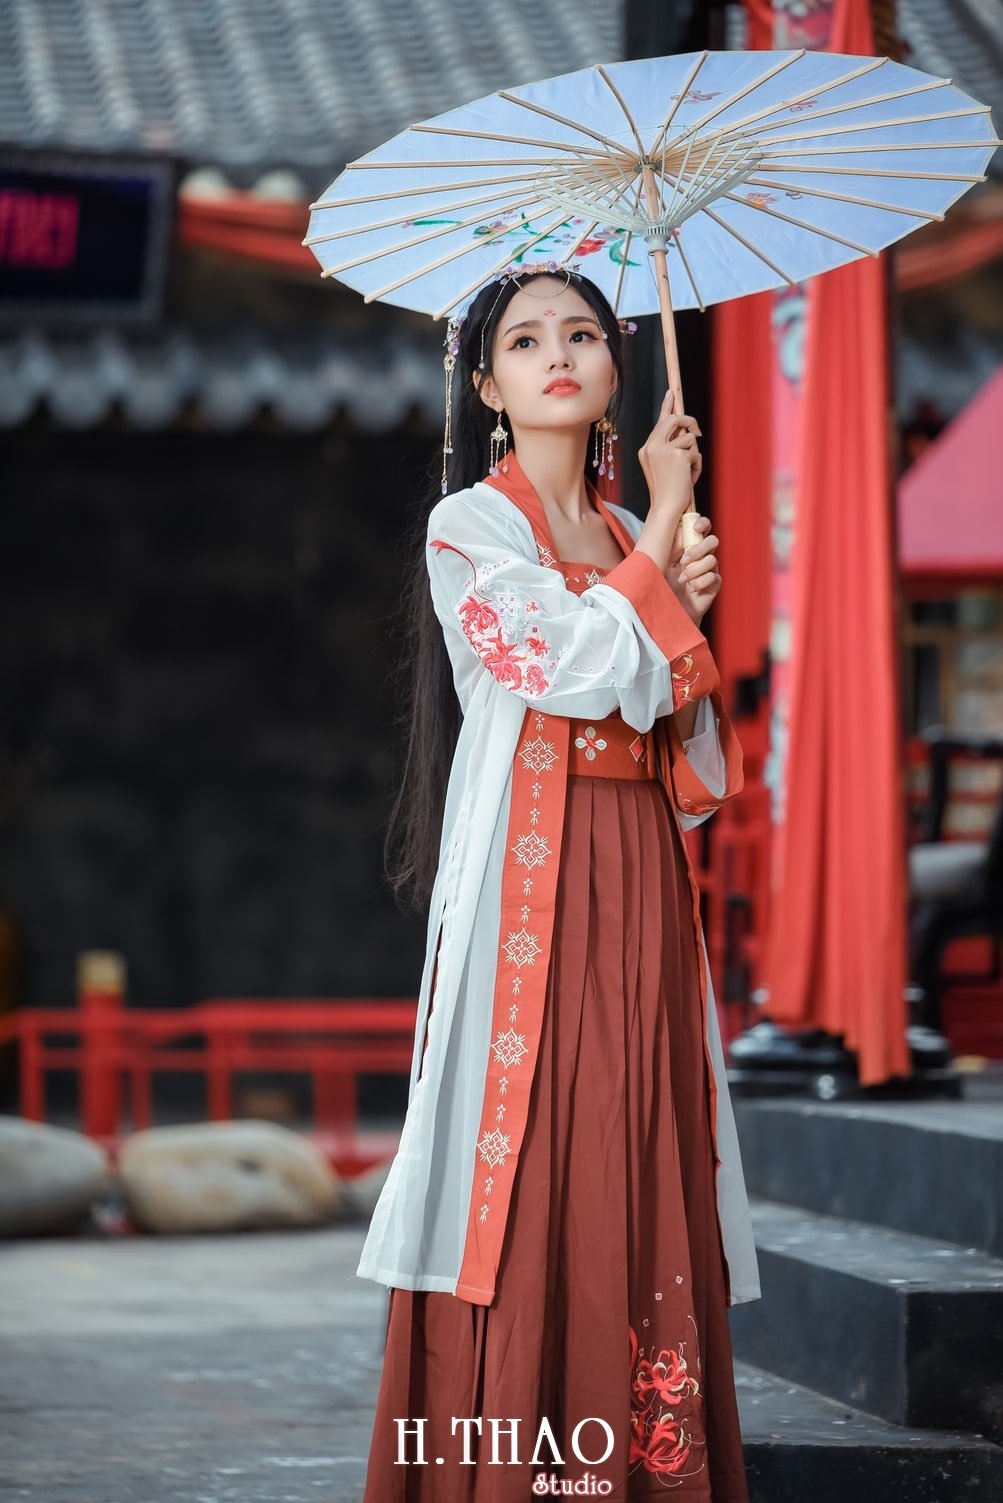 Anh tieu long nu 17 - Bộ ảnh cổ trang chụp theo concept tiểu long nữ nhẹ nhàng - HThao Studio